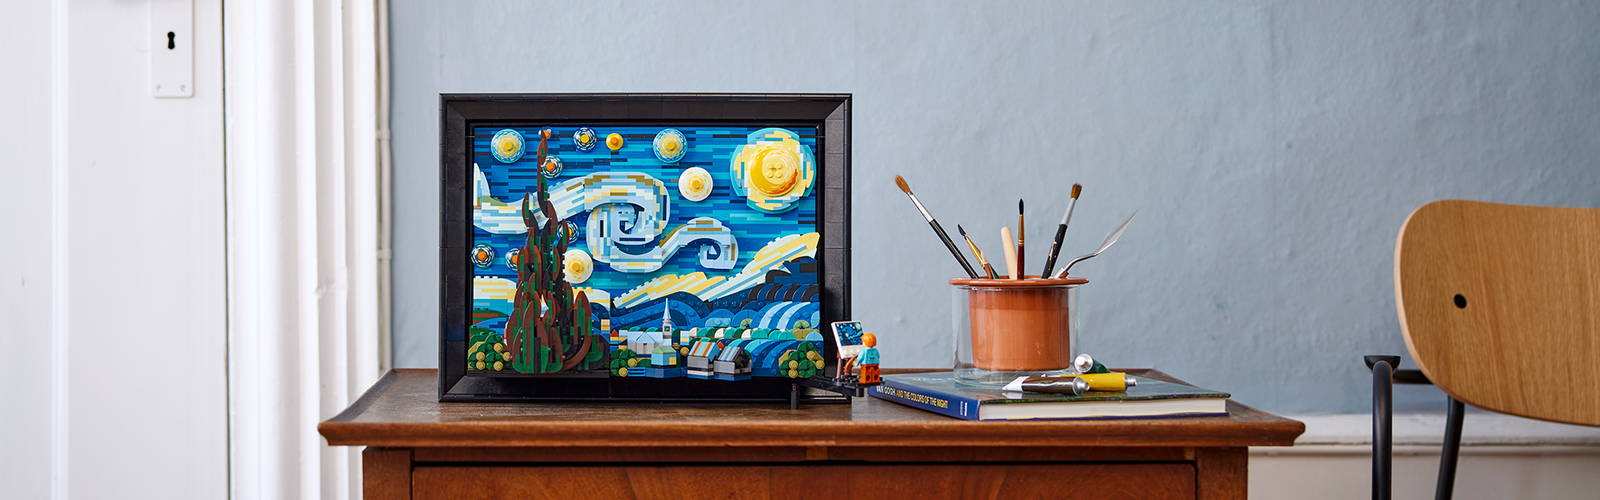 Incontriamo il fan-designer LEGO Ideas Vincent van Gogh - La notte stellata